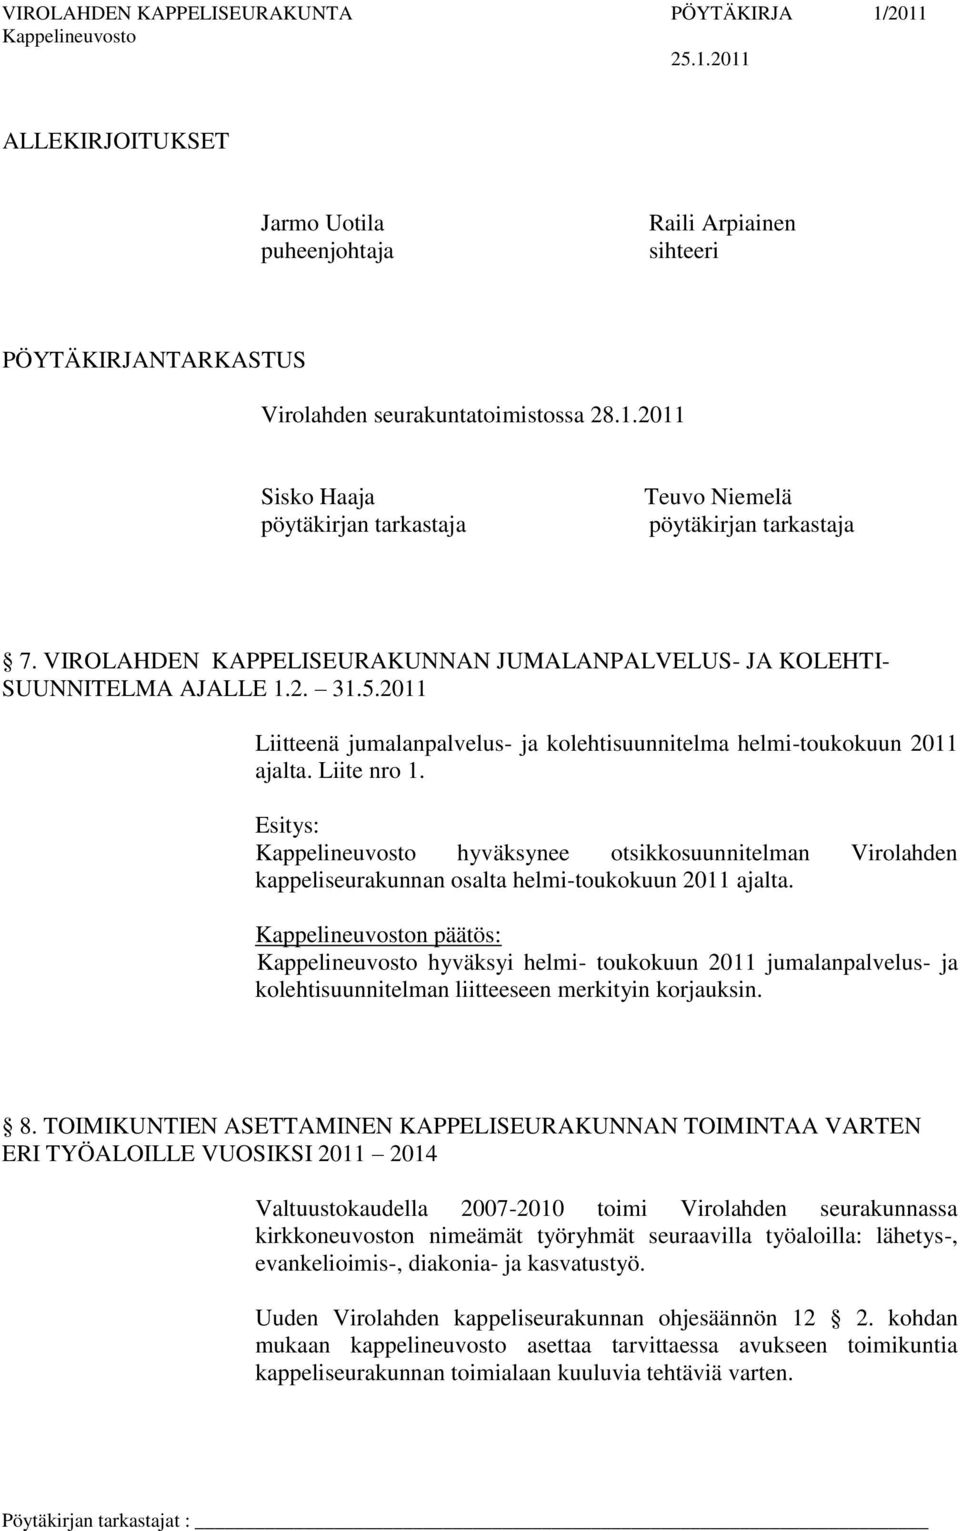 2011 Liitteenä jumalanpalvelus- ja kolehtisuunnitelma helmi-toukokuun 2011 ajalta. Liite nro 1. hyväksynee otsikkosuunnitelman Virolahden kappeliseurakunnan osalta helmi-toukokuun 2011 ajalta.